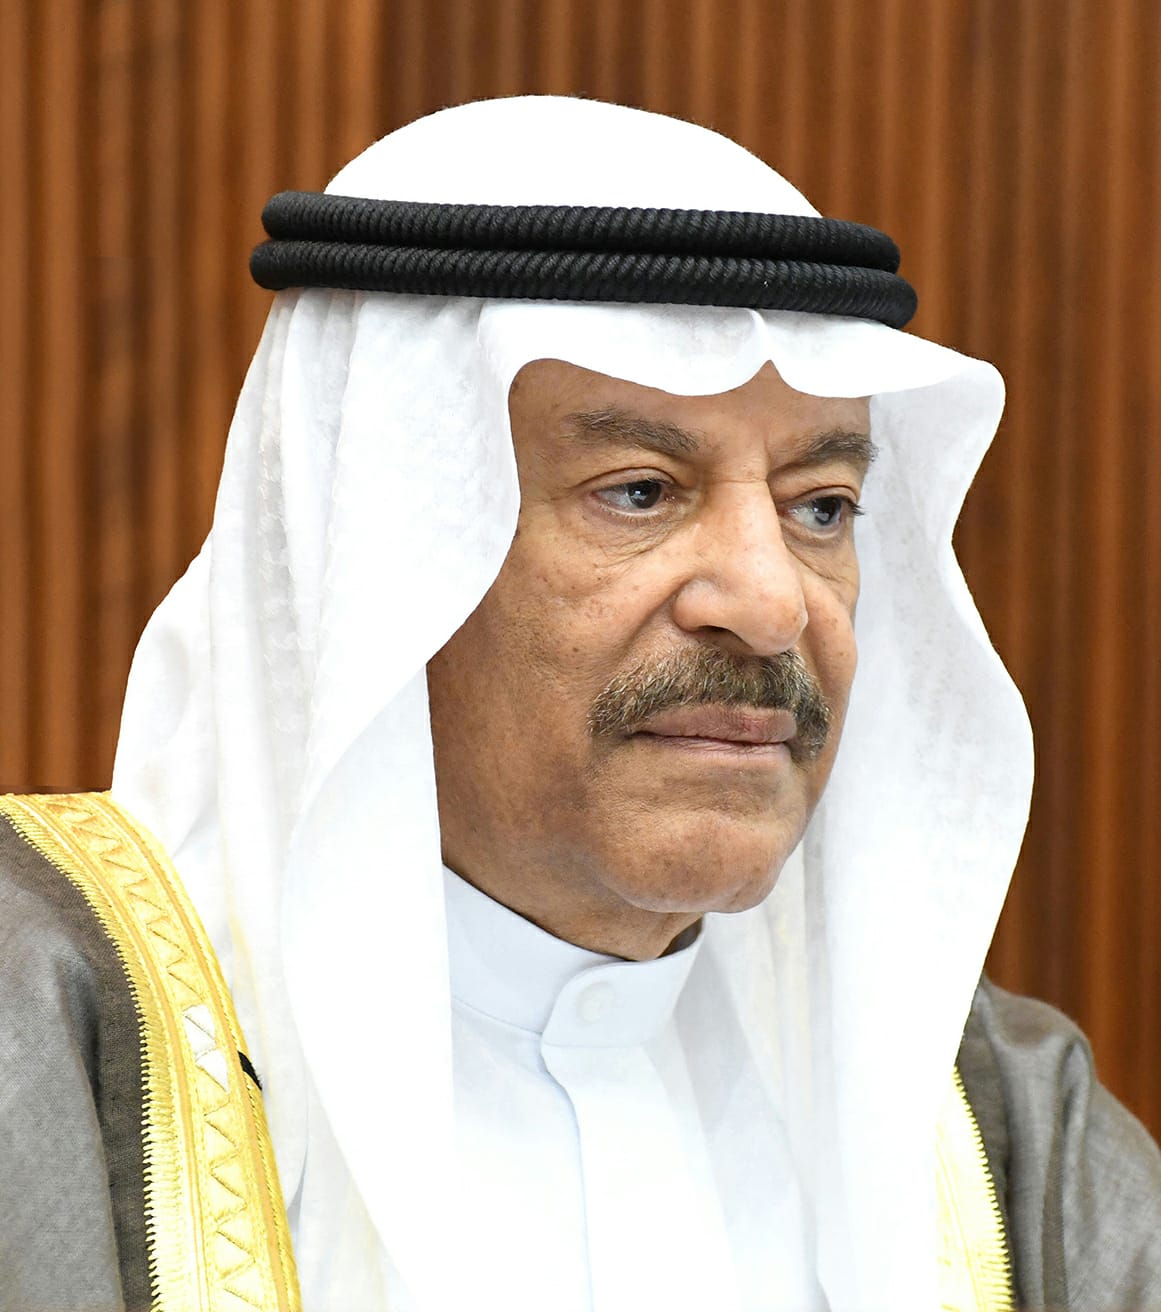 رئيس (الشورى البحريني): السعودية تشهد نهضة تنموية شاملة عبر برامج طموحة تُترجم رؤية قيادتها الحكيمة